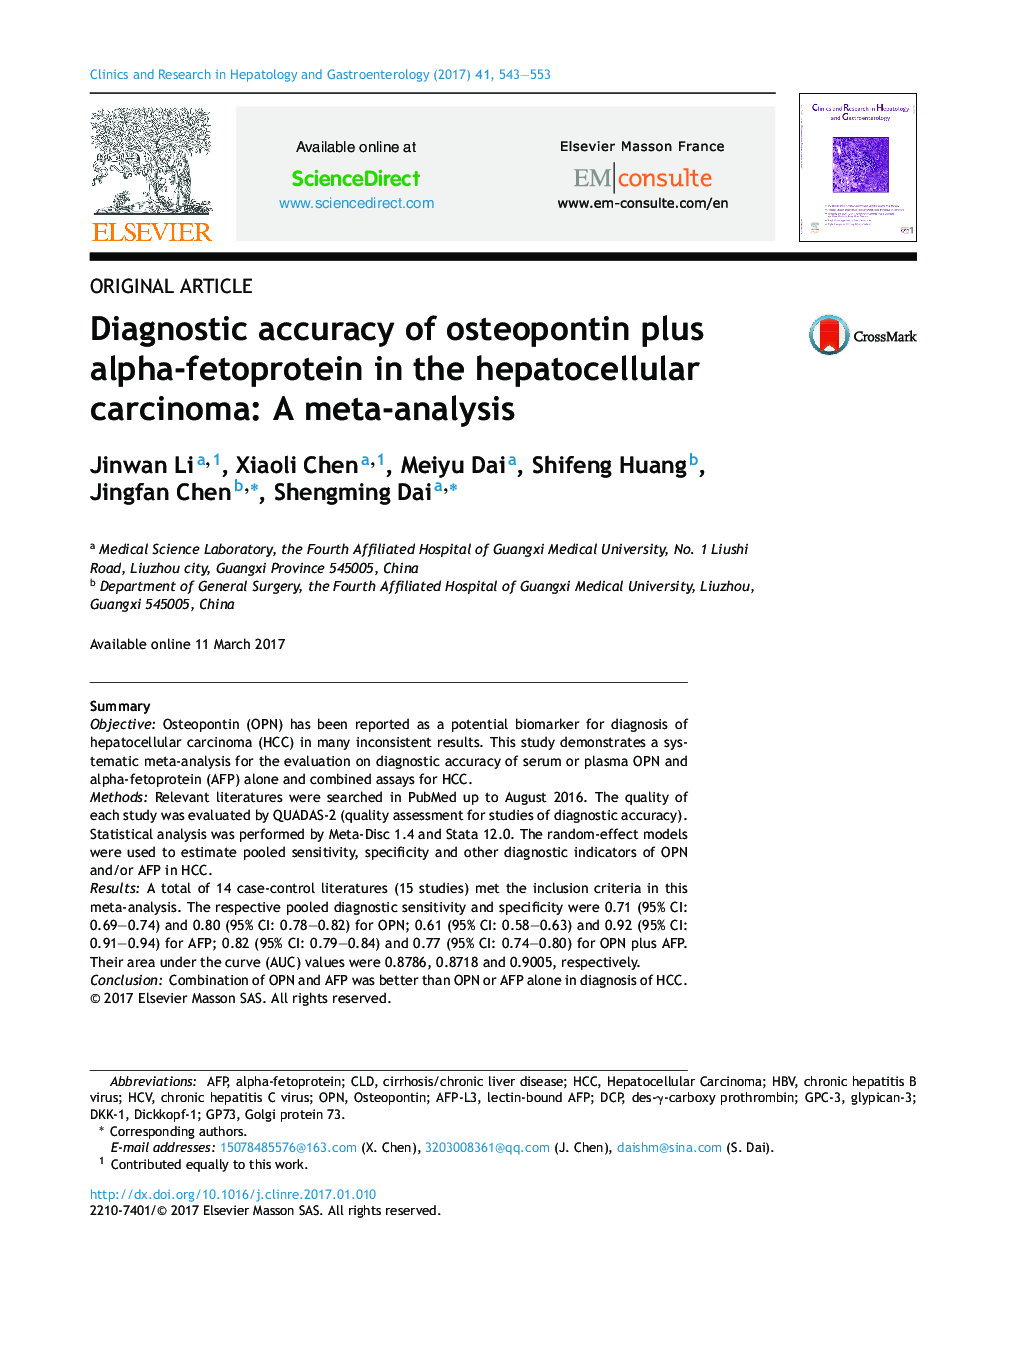 دقت تشخیصی استئوپونتین به اضافه آلفا فتوپروتئین در کارسینوم هپاتوسلولار: یک متاآنالیز 